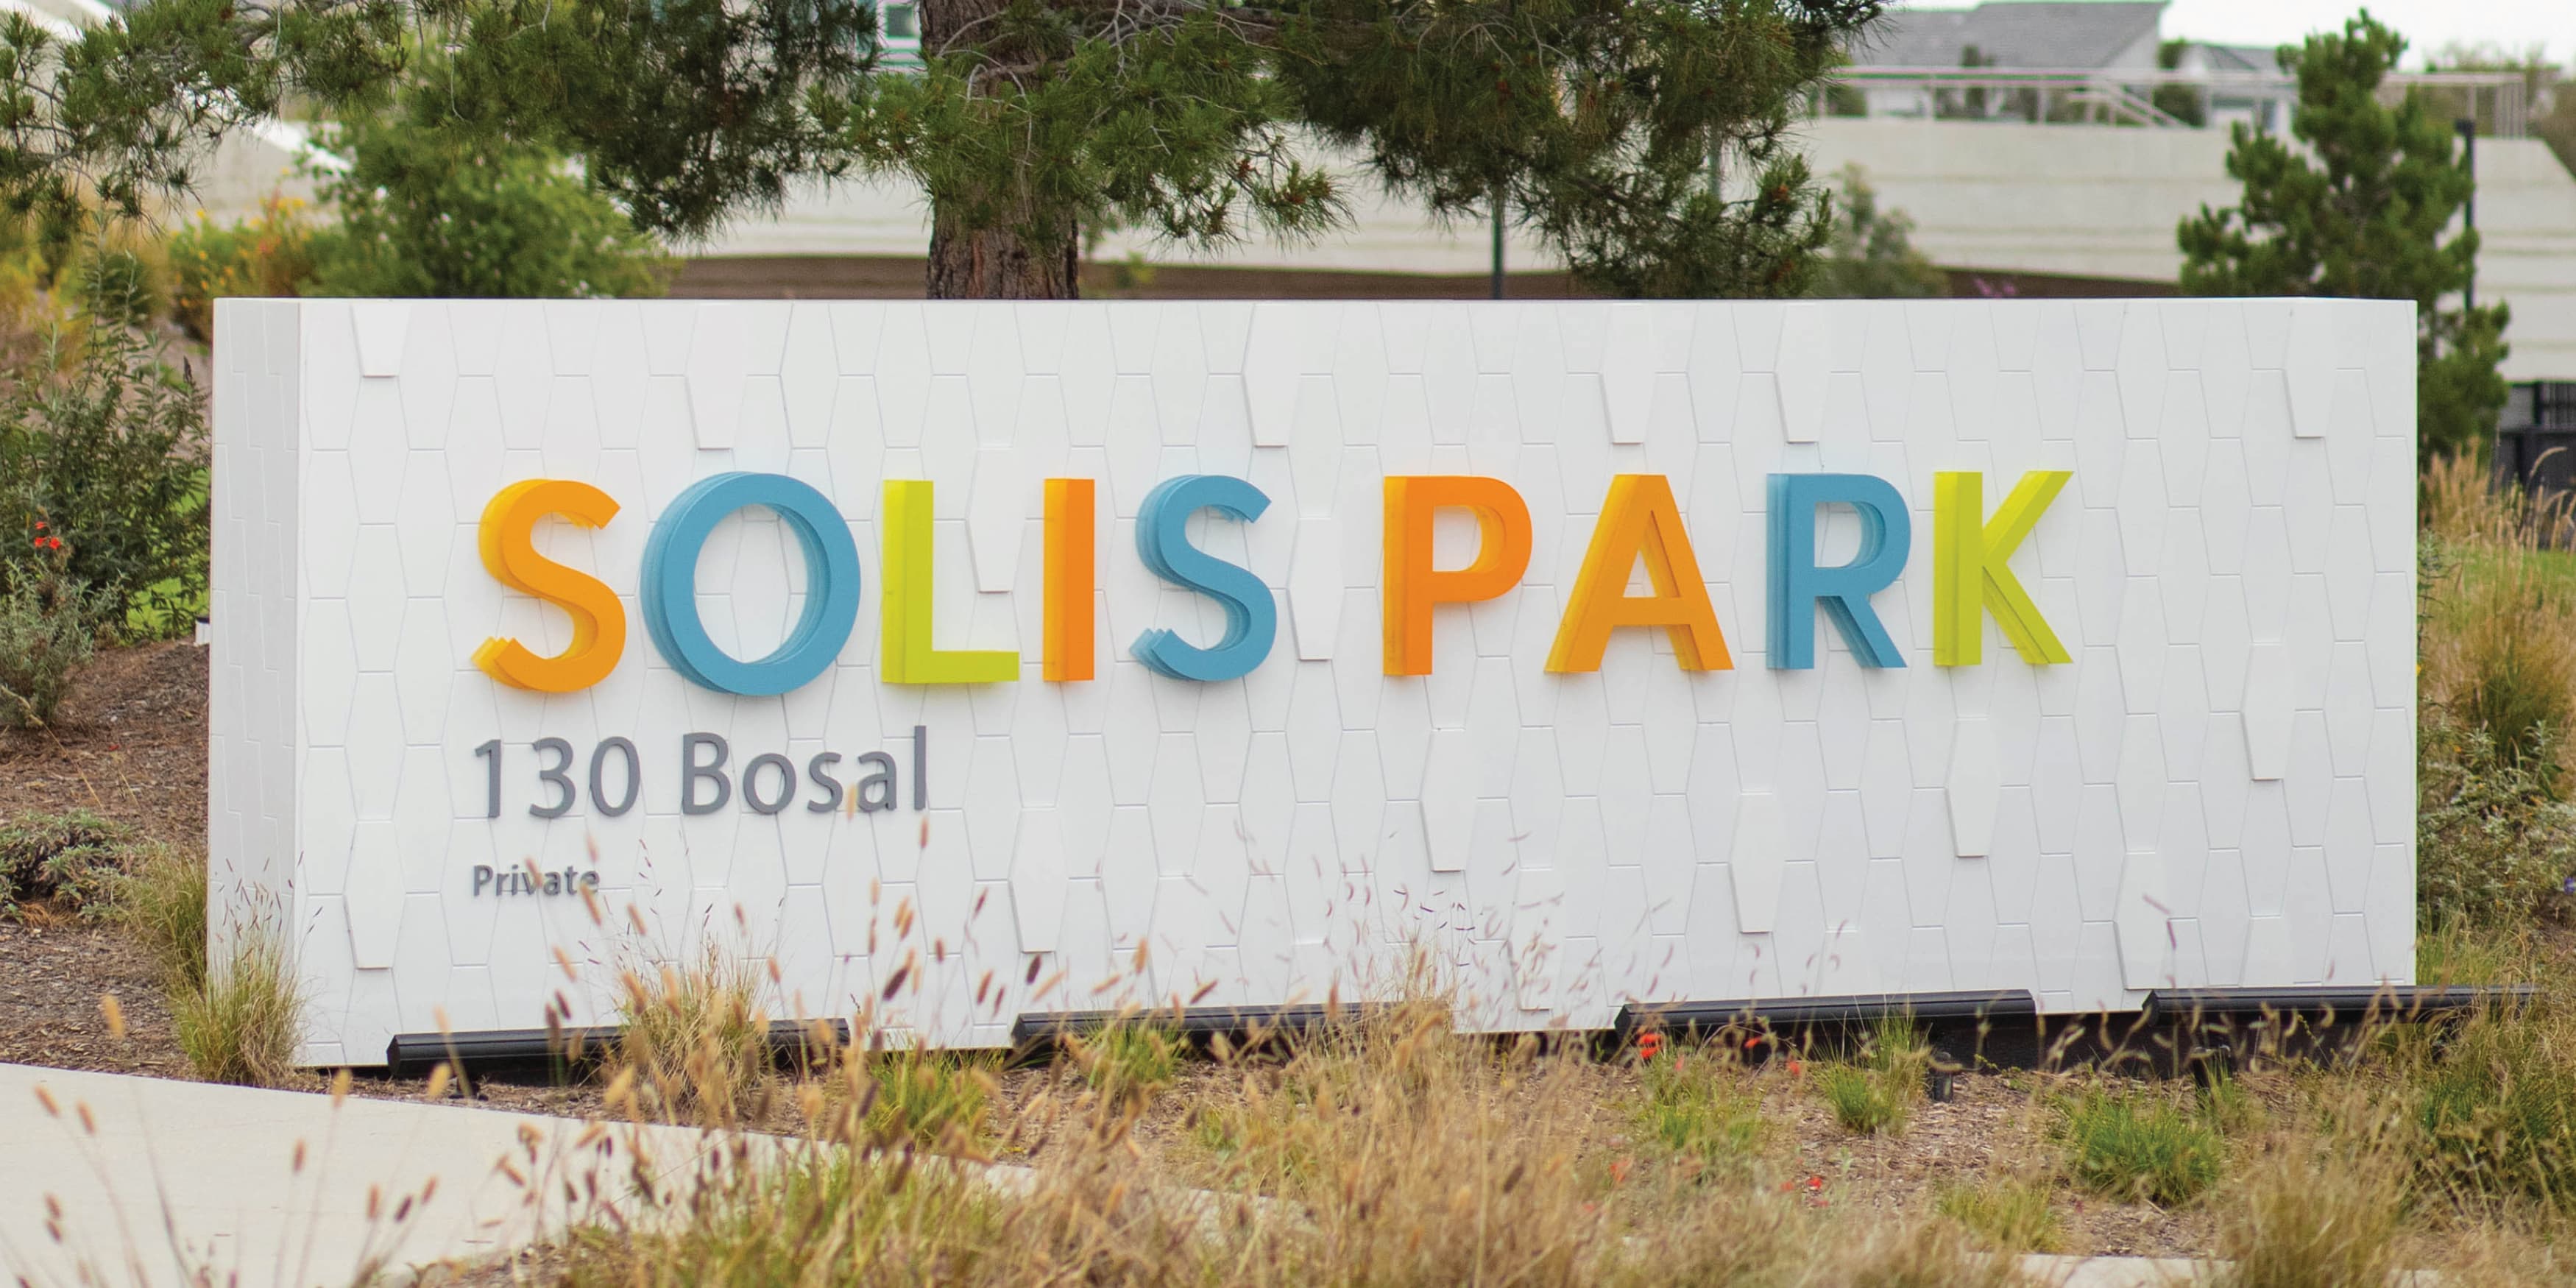 Park identity signage for Solis Park in Irvine, California